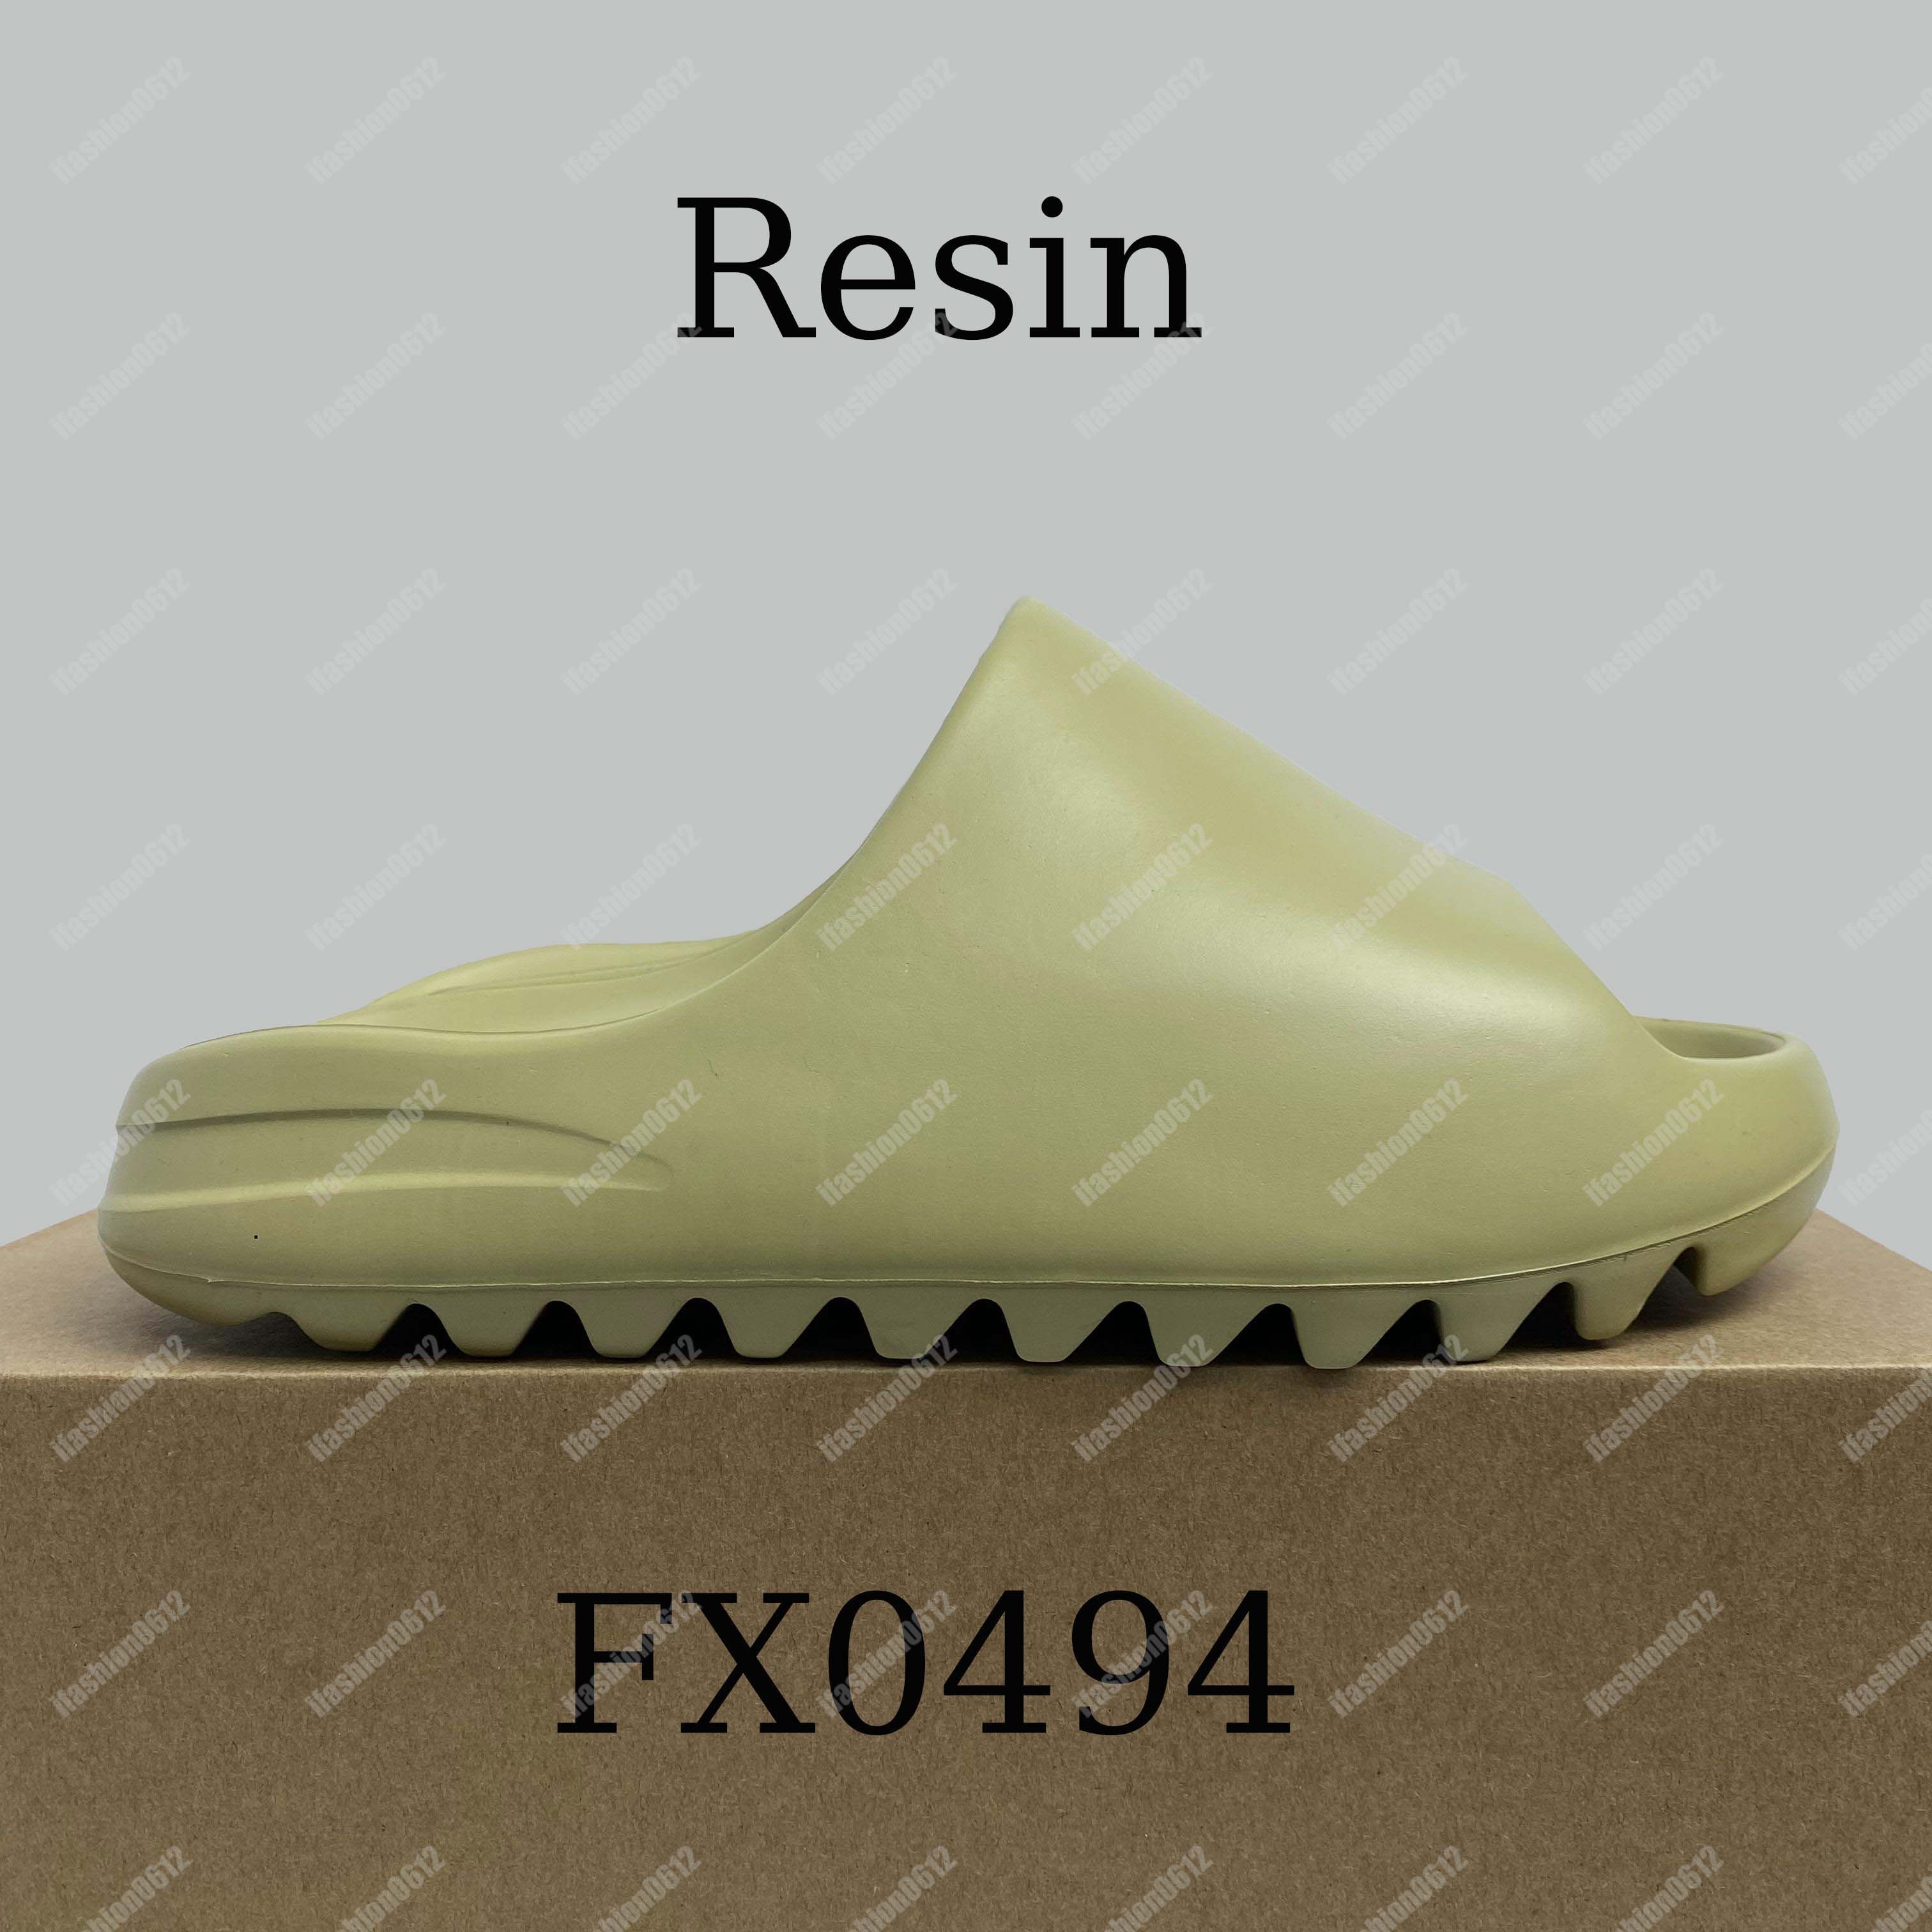 FX0494 Resin